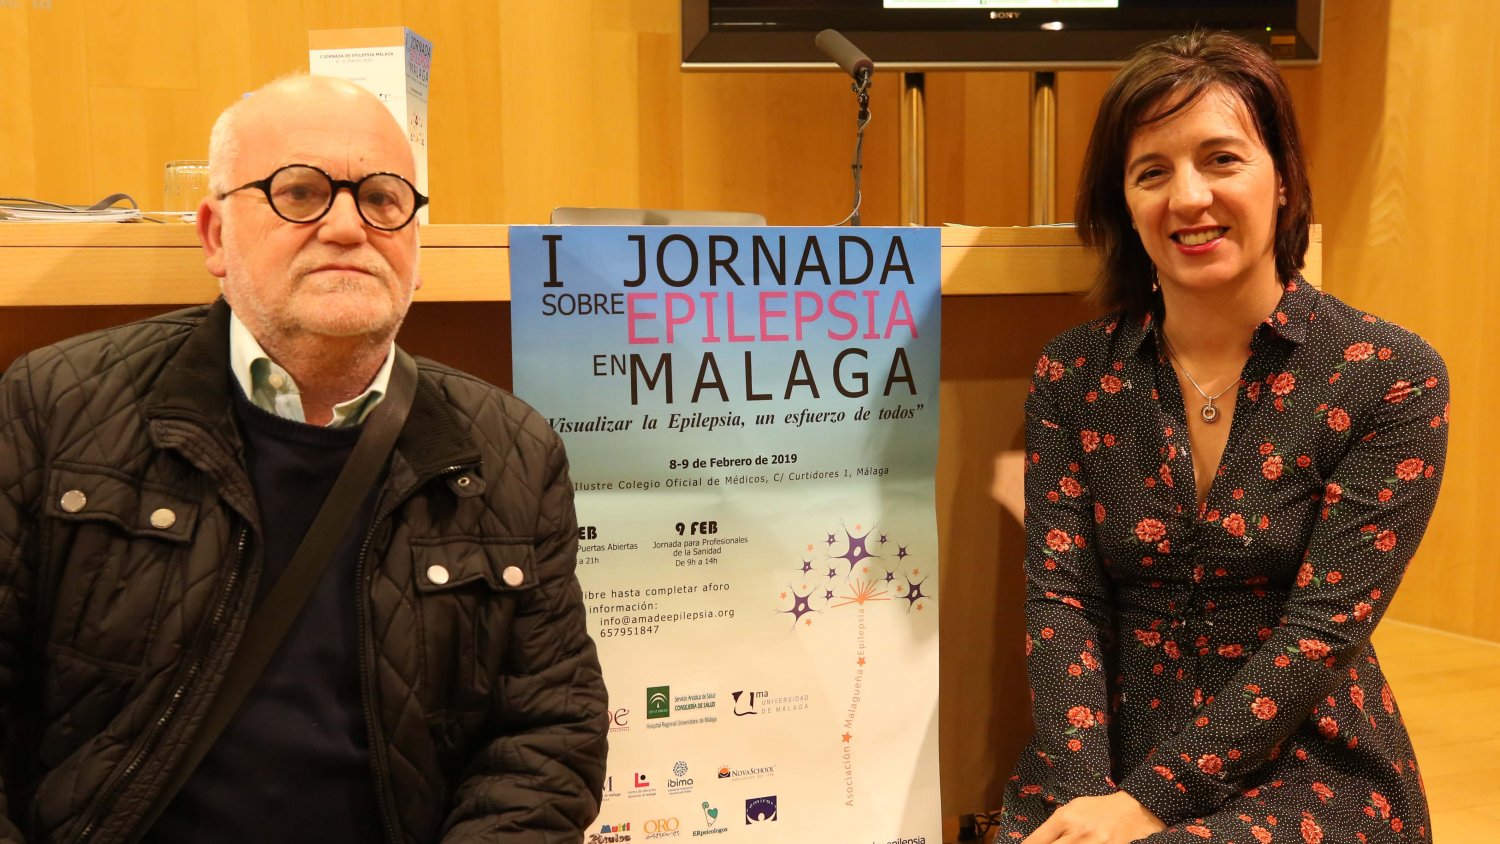 La Diputación colabora con la Asociación Malagueña de Epilepsia en unas jornadas que abordarán esta patología